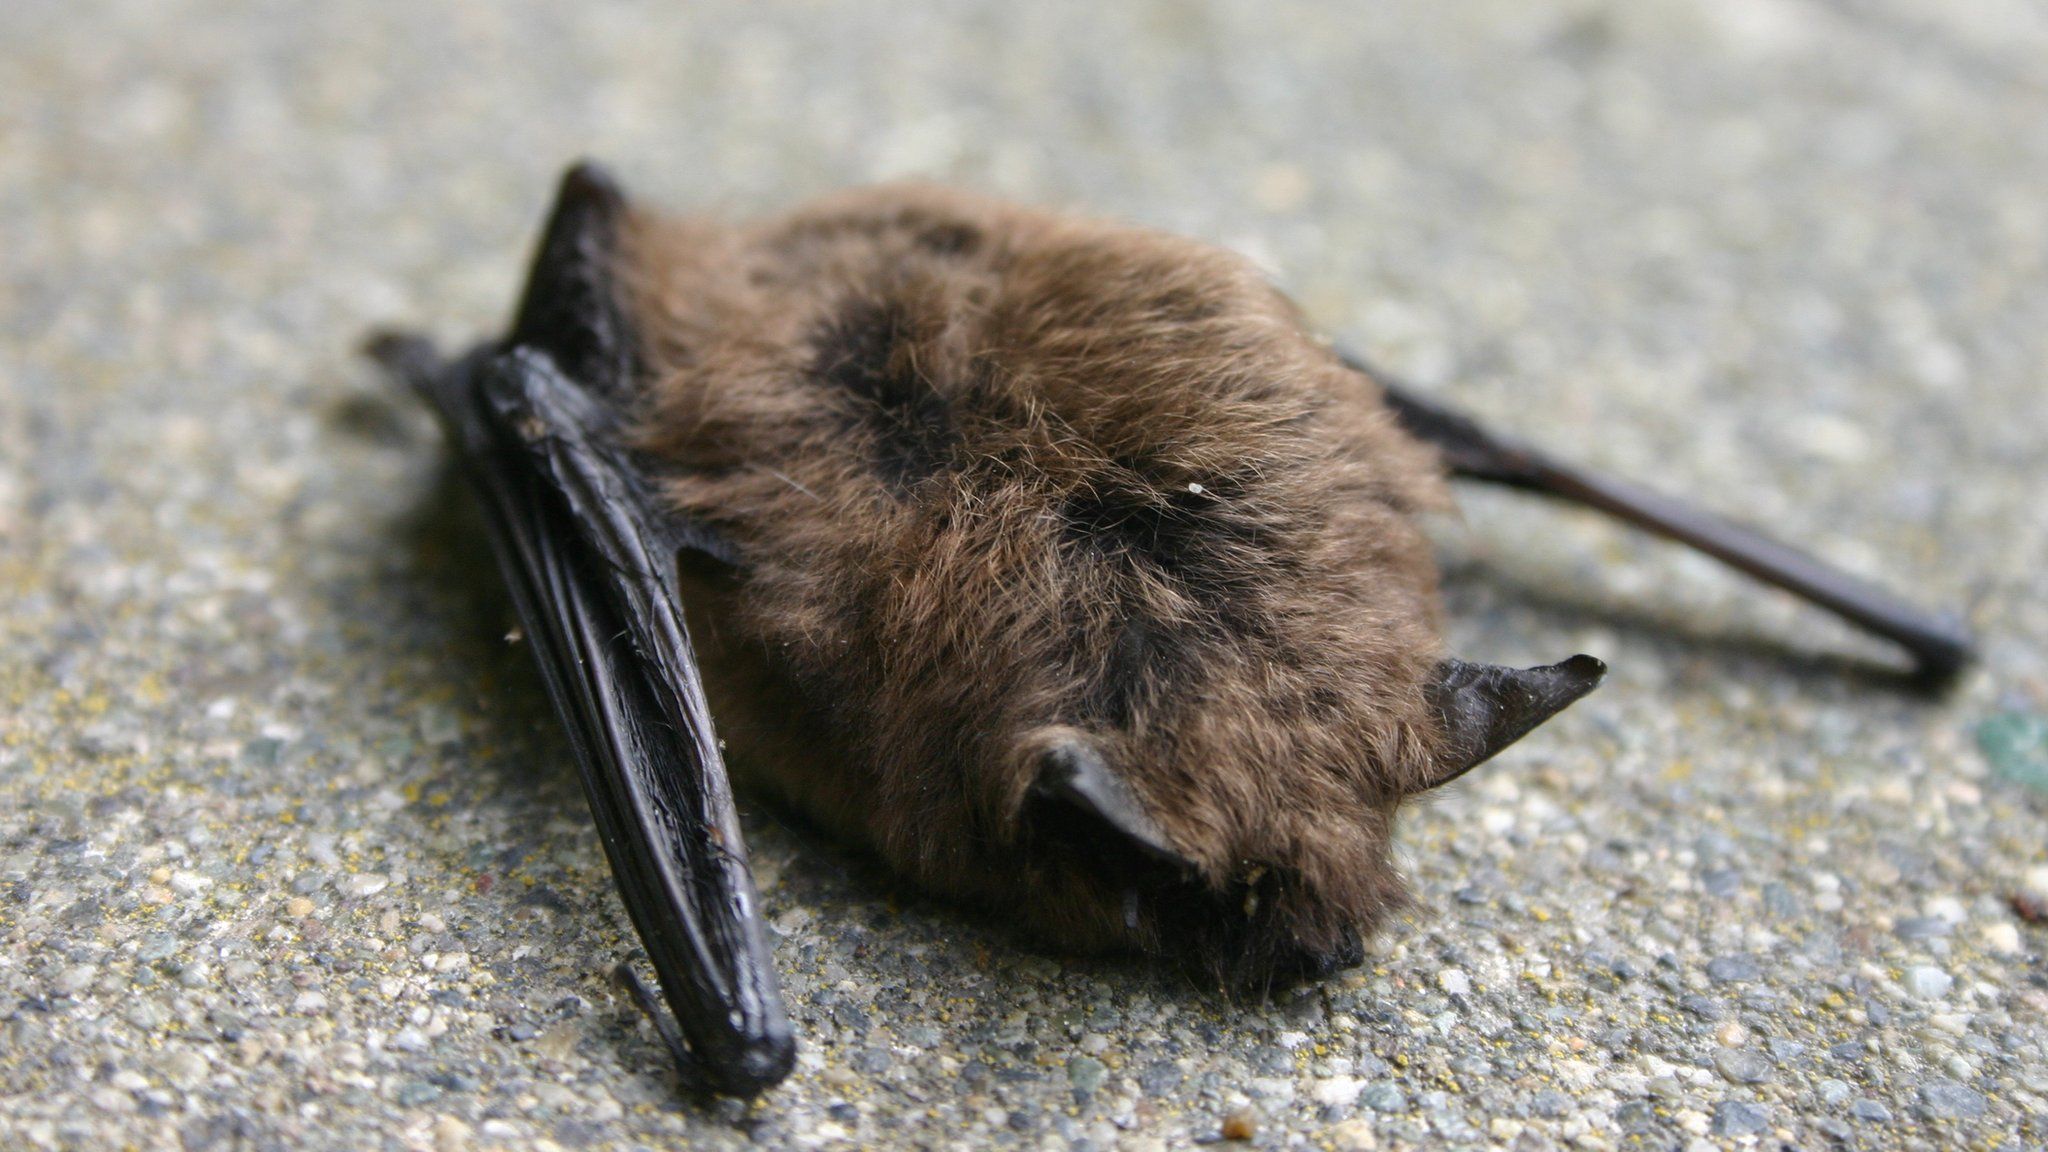 A stock image of a dead bat